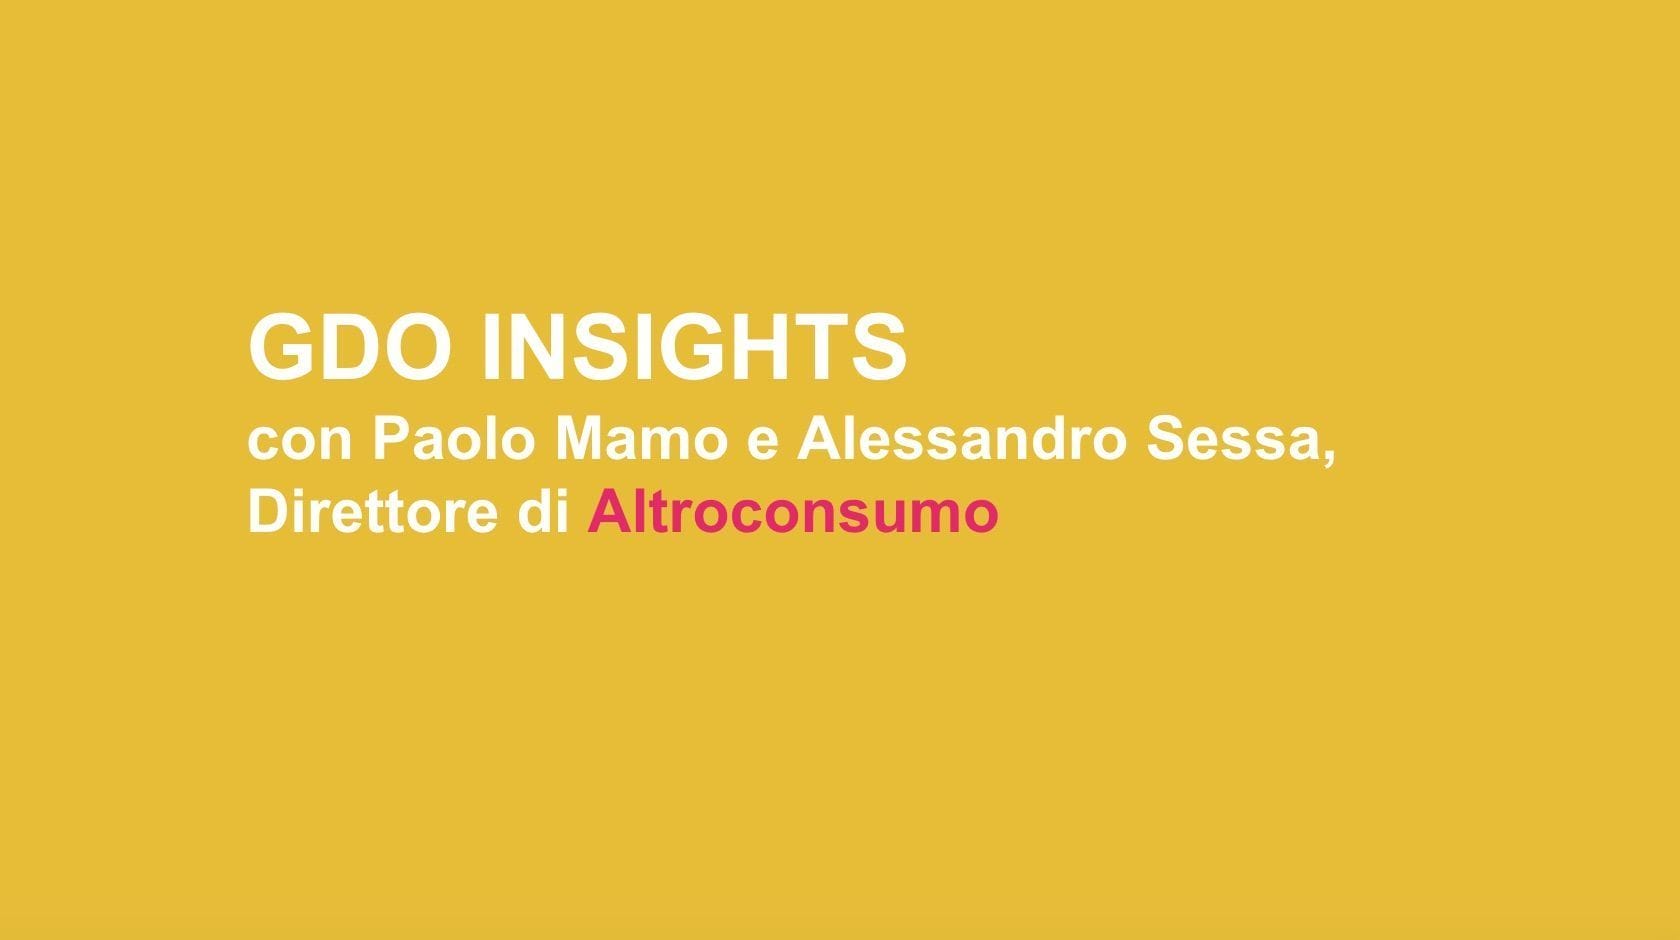 Altroconsumo insights : un confronto tra Paolo Mamo e Alessandro Sessa.